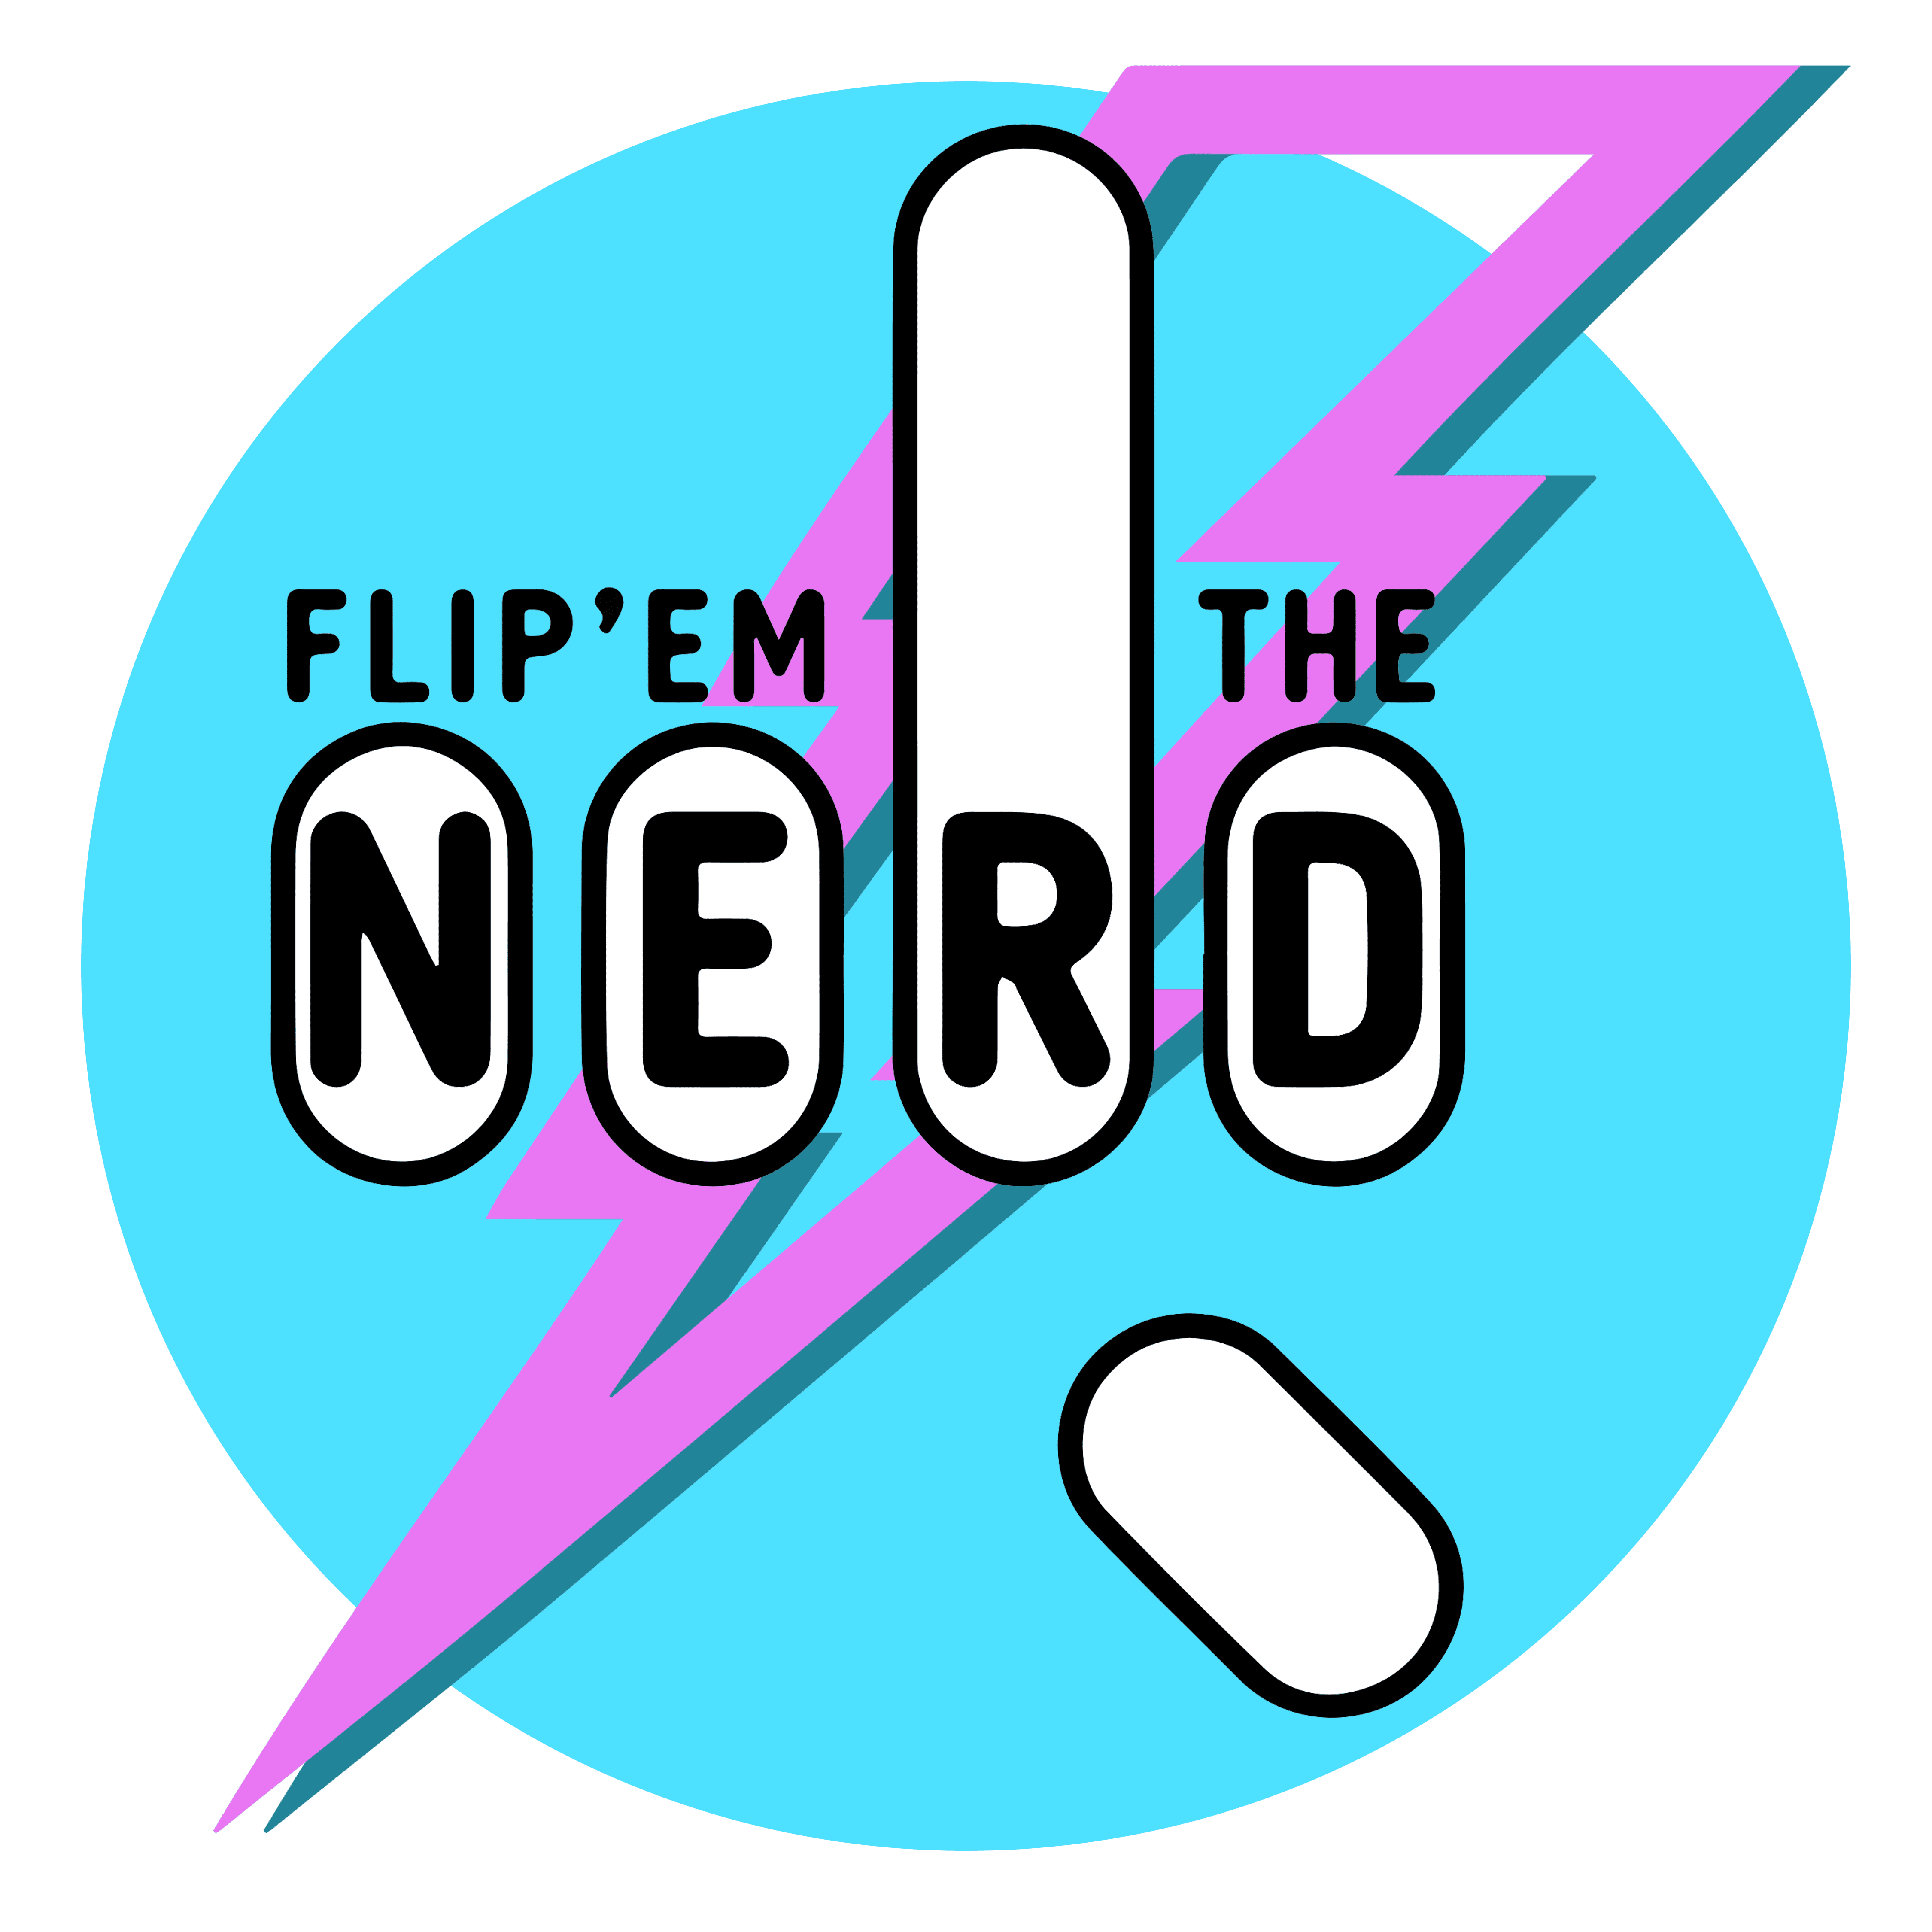 FLIPEM the nerd logo